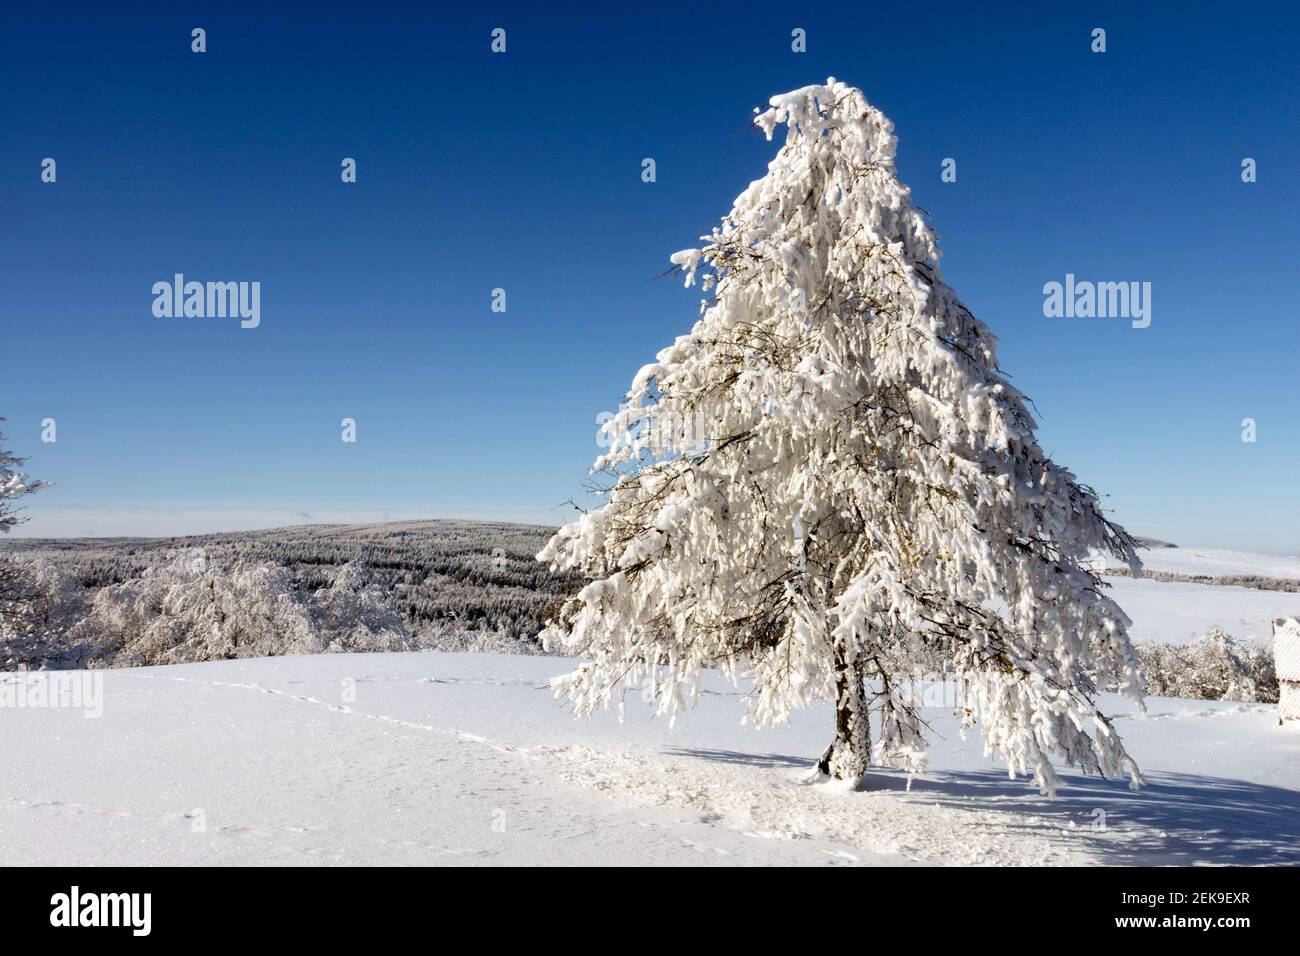 Paisaje escénico cubierto de nieve Árbol nevado Invierno checo montañas de nieve, montaña de nieve cielo azul montañas checas Foto de stock